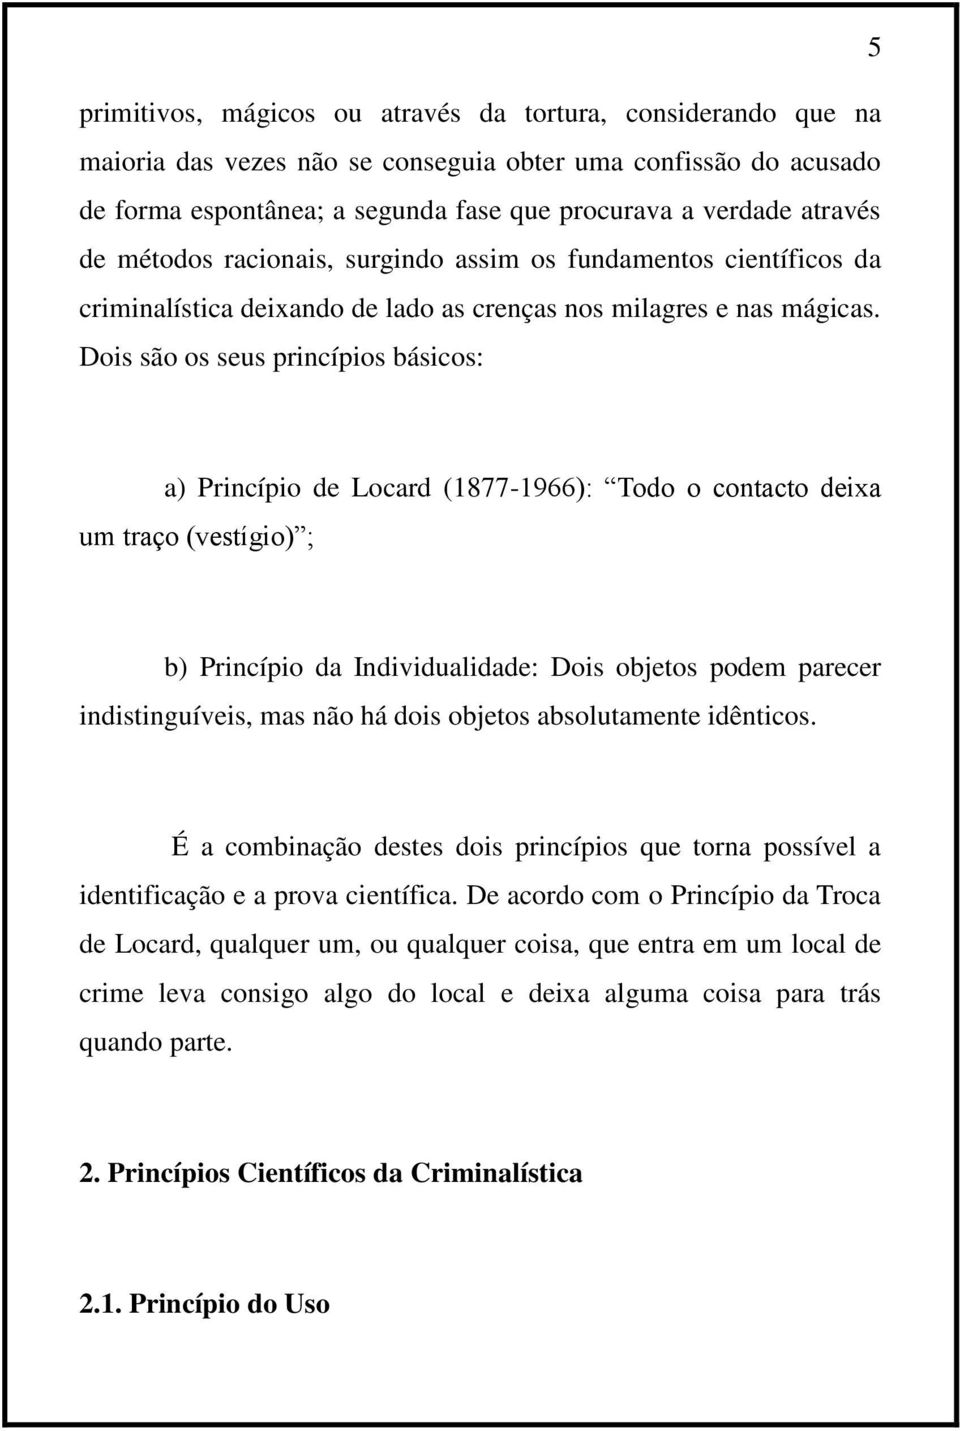 Dois são os seus princípios básicos: a) Princípio de Locard (1877-1966): Todo o contacto deixa um traço (vestígio) ; b) Princípio da Individualidade: Dois objetos podem parecer indistinguíveis, mas